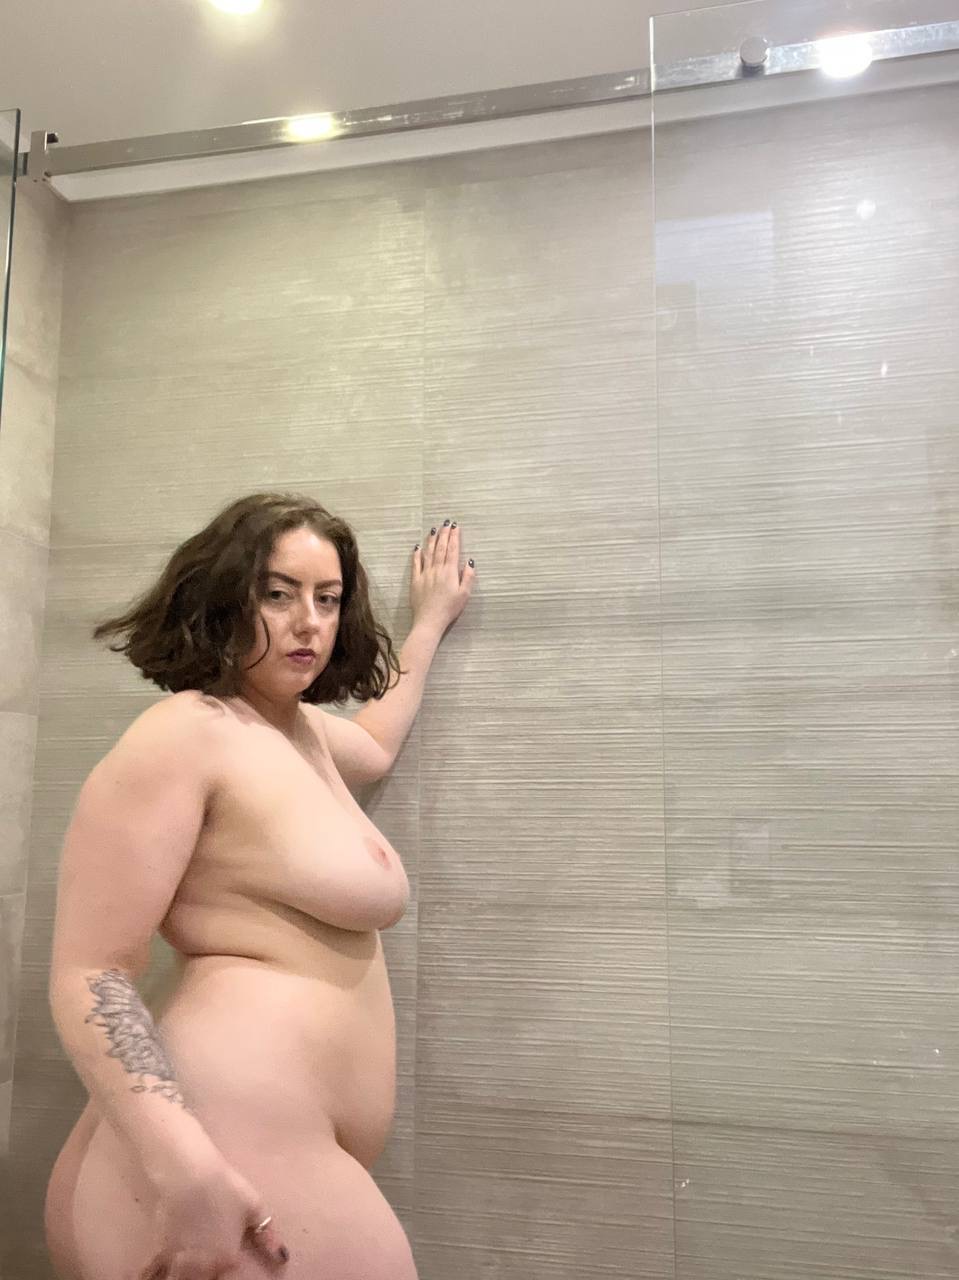 OnlyFans fatty Kristi KKK exposing her killer curves in the shower  